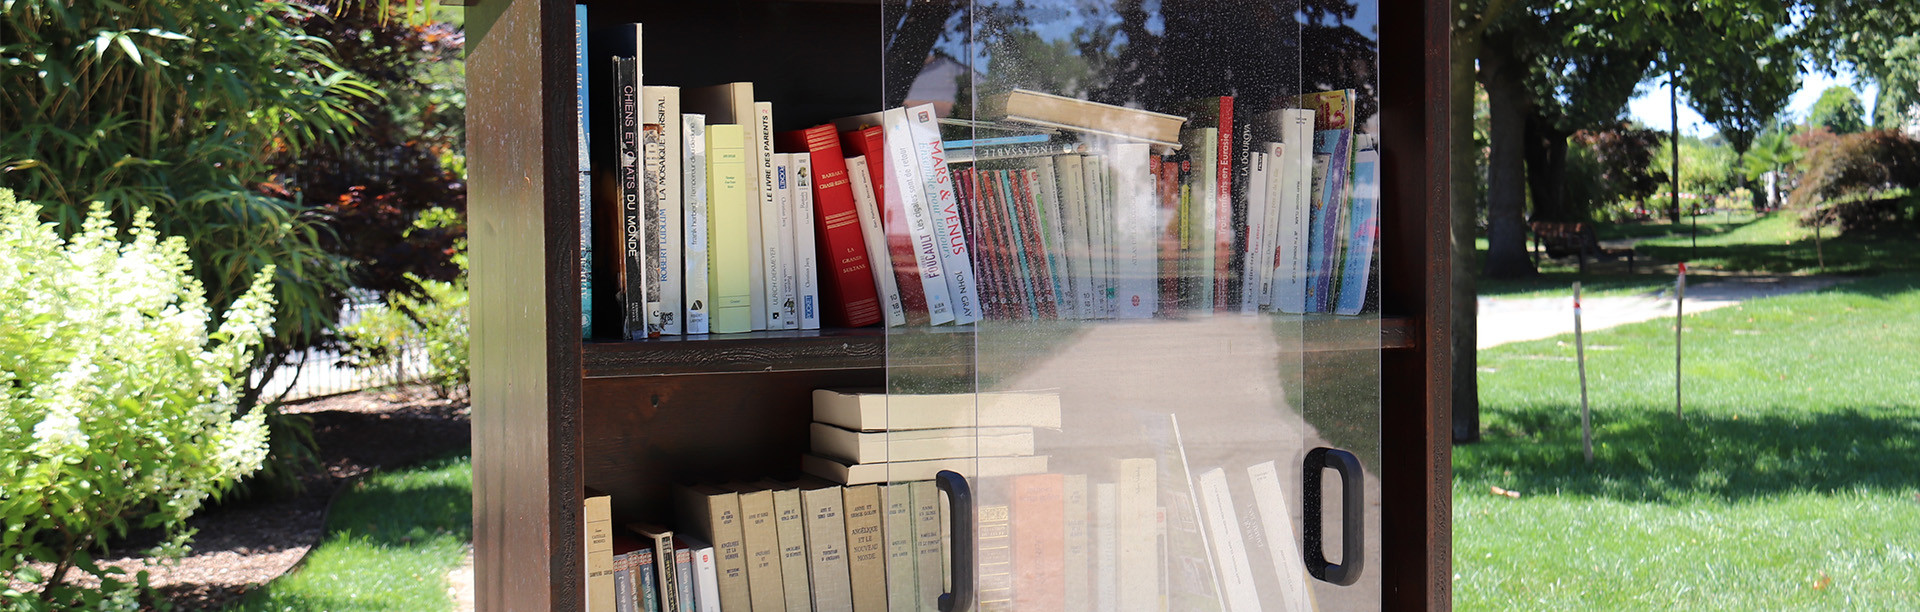 Boîtes à livres - Saint-Médard-en-Jalles